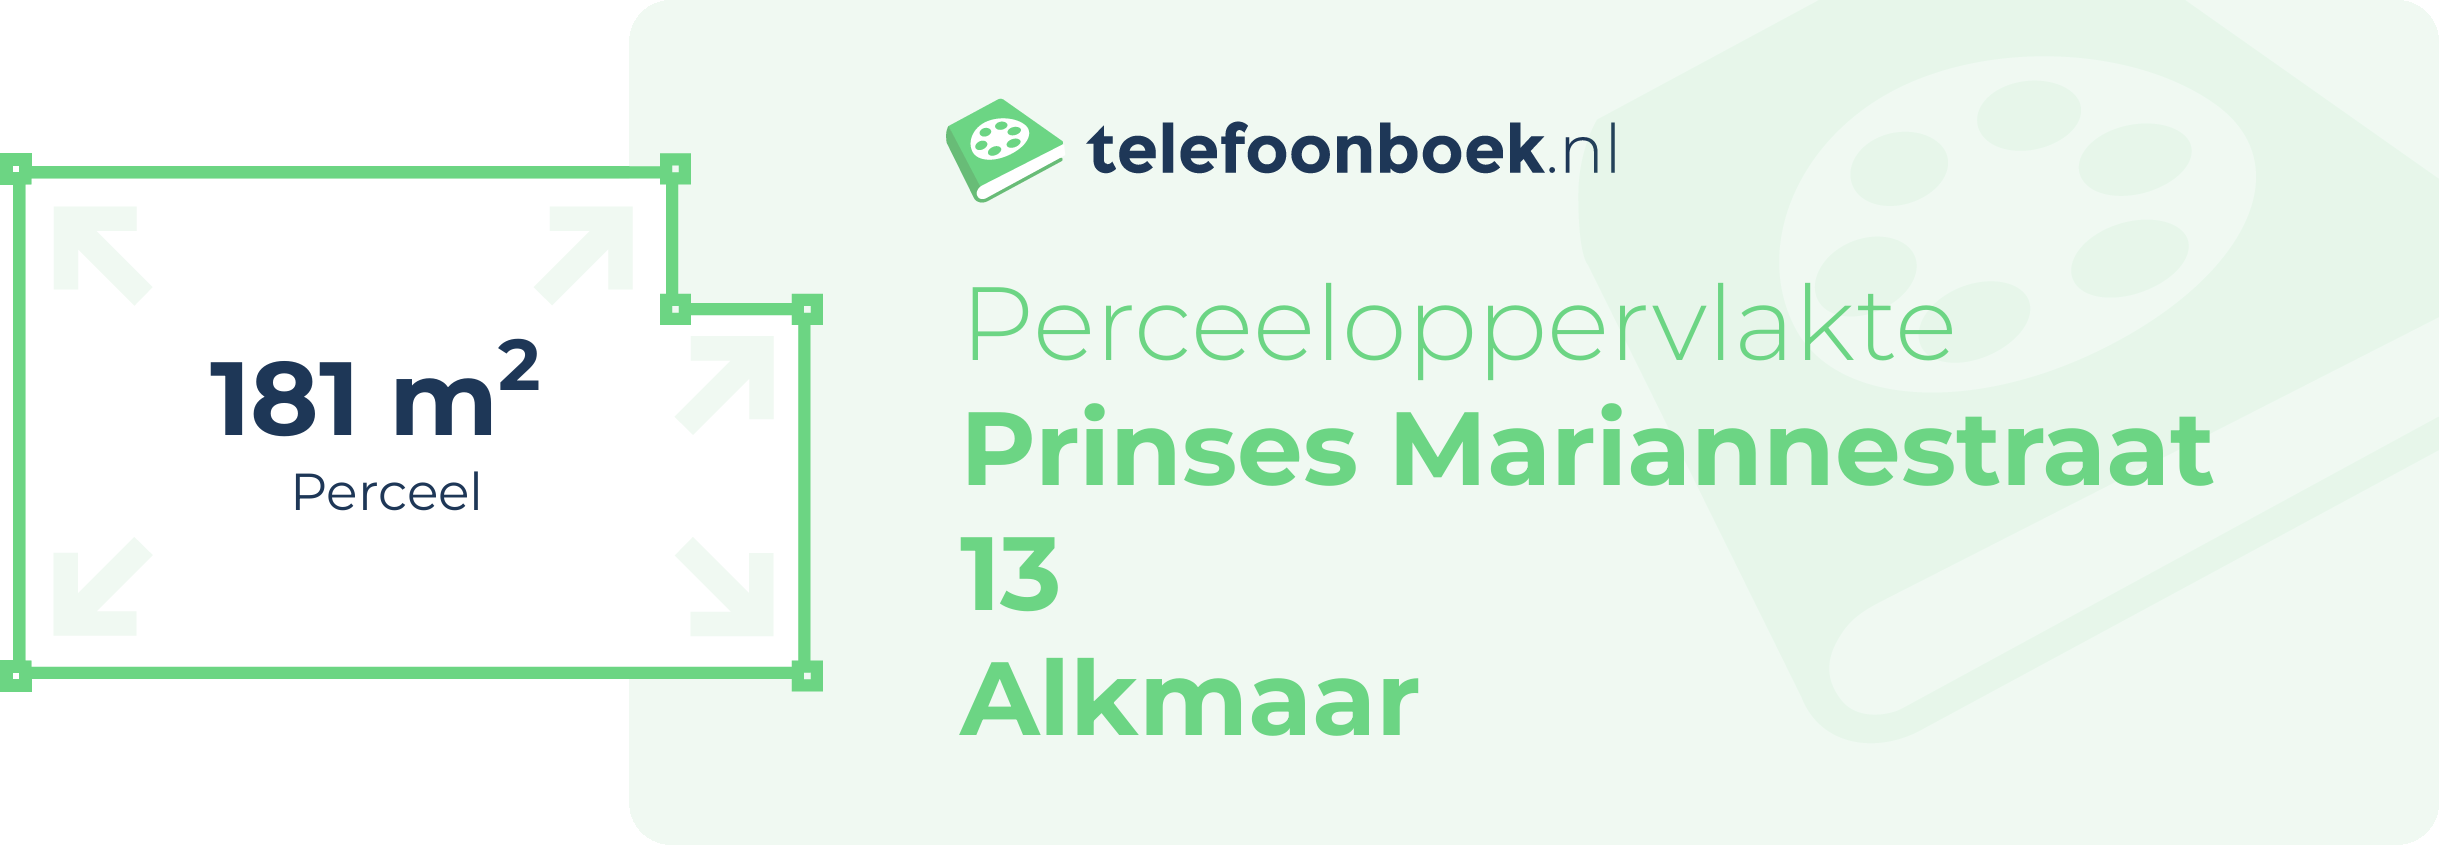 Perceeloppervlakte Prinses Mariannestraat 13 Alkmaar